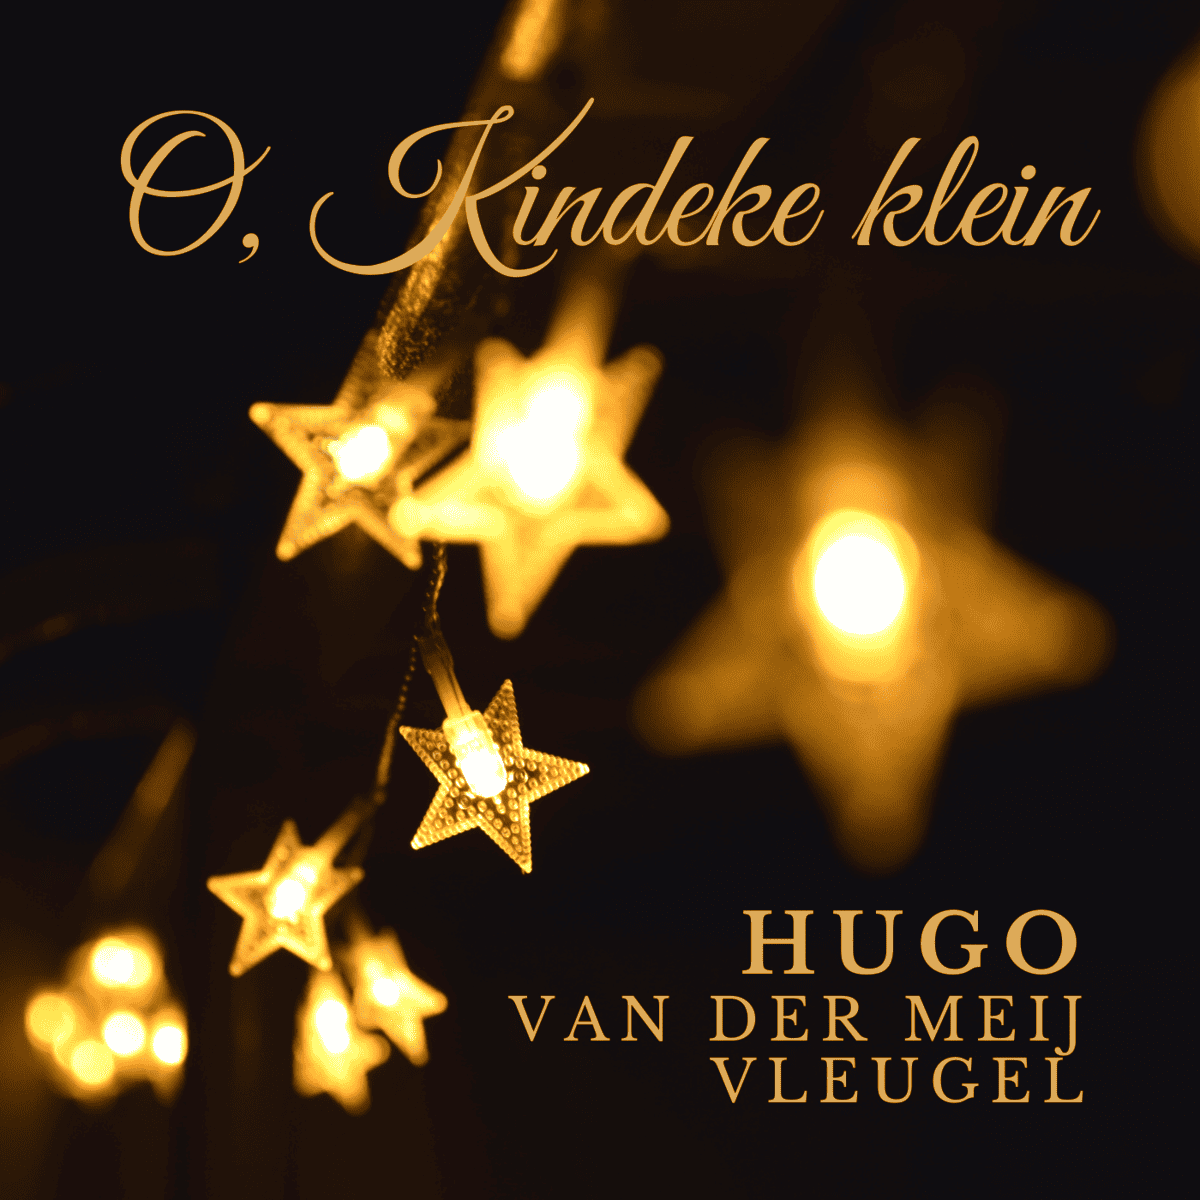 Cover image "O Kindeke Klein" by Hugo Van Der Meij